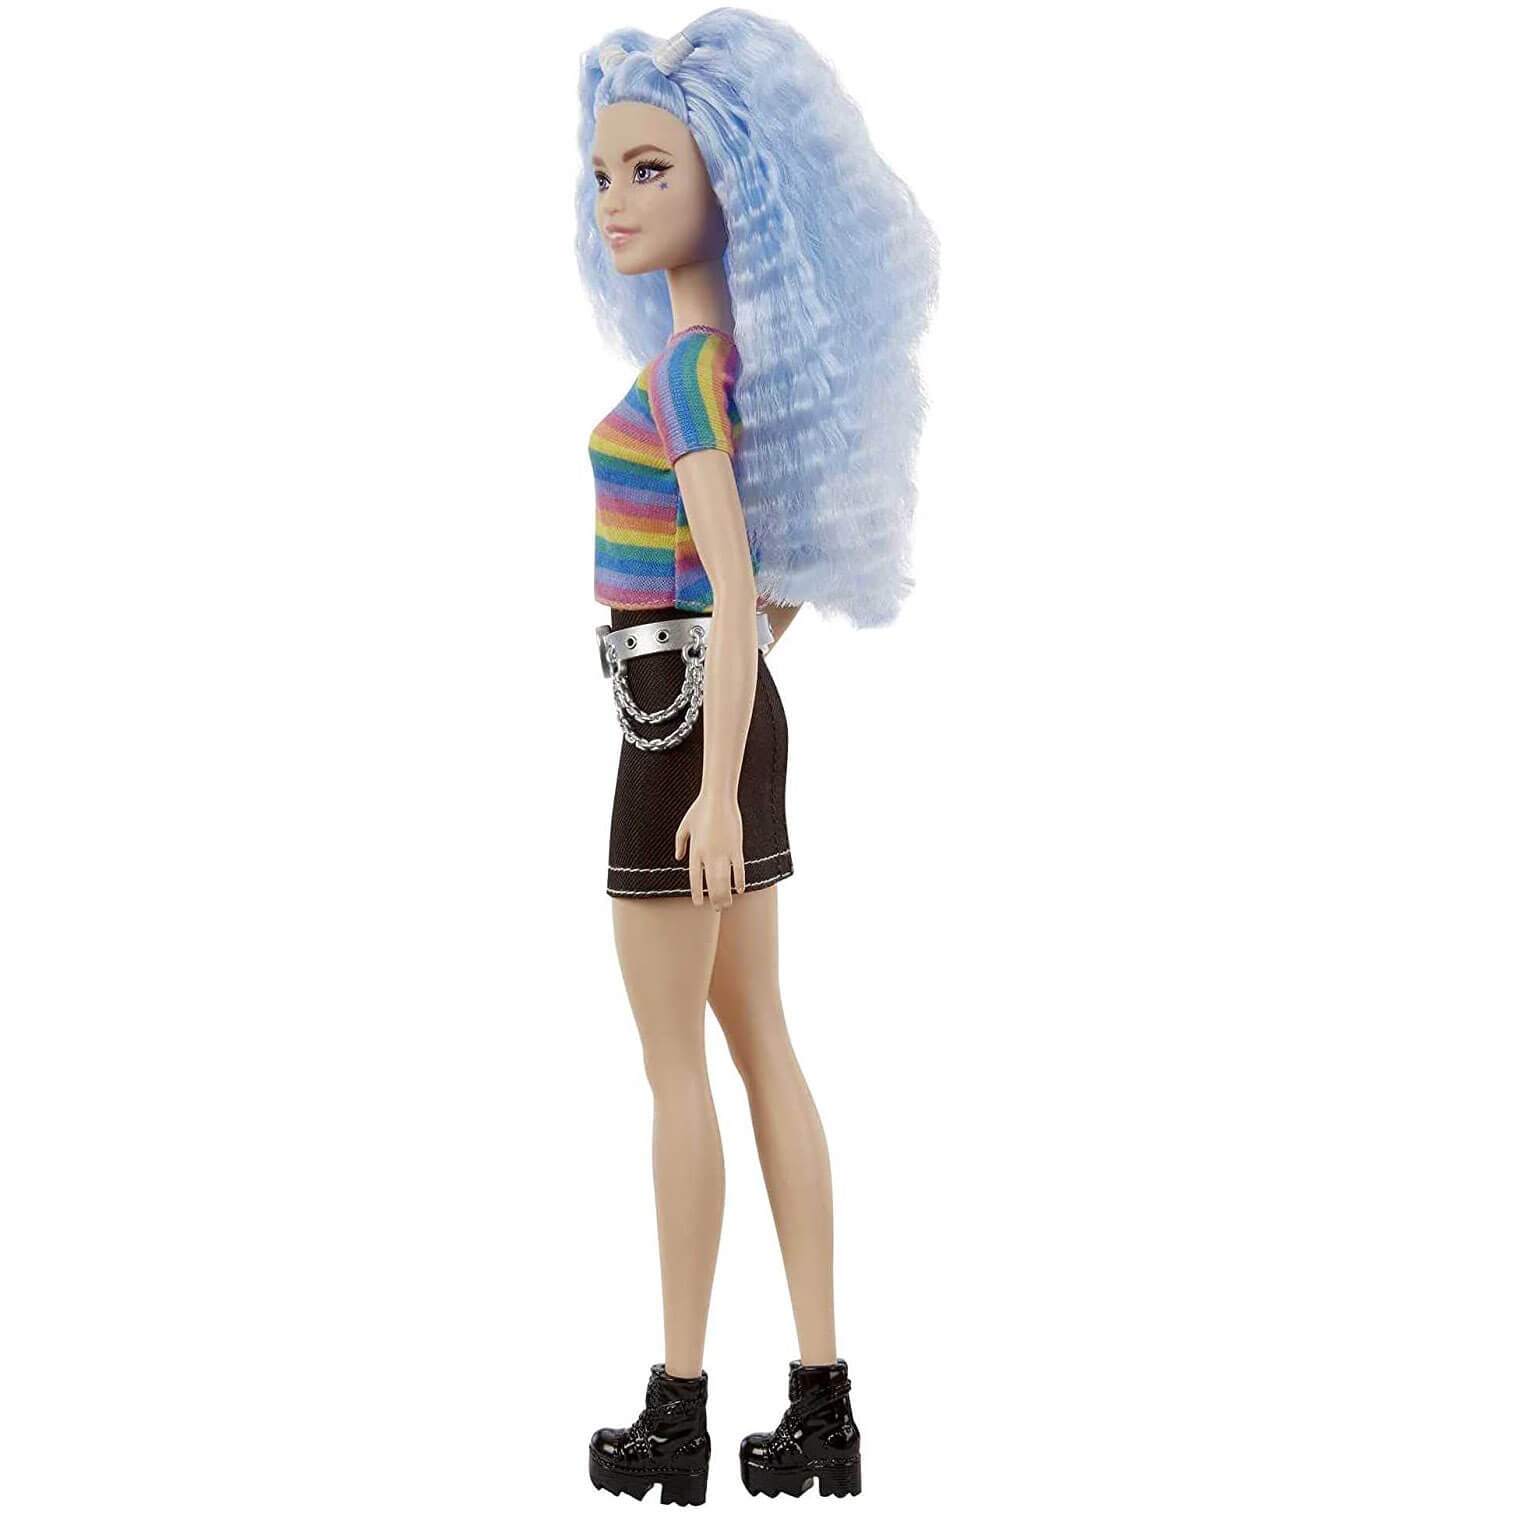 Barbie Fashionistas Doll #170